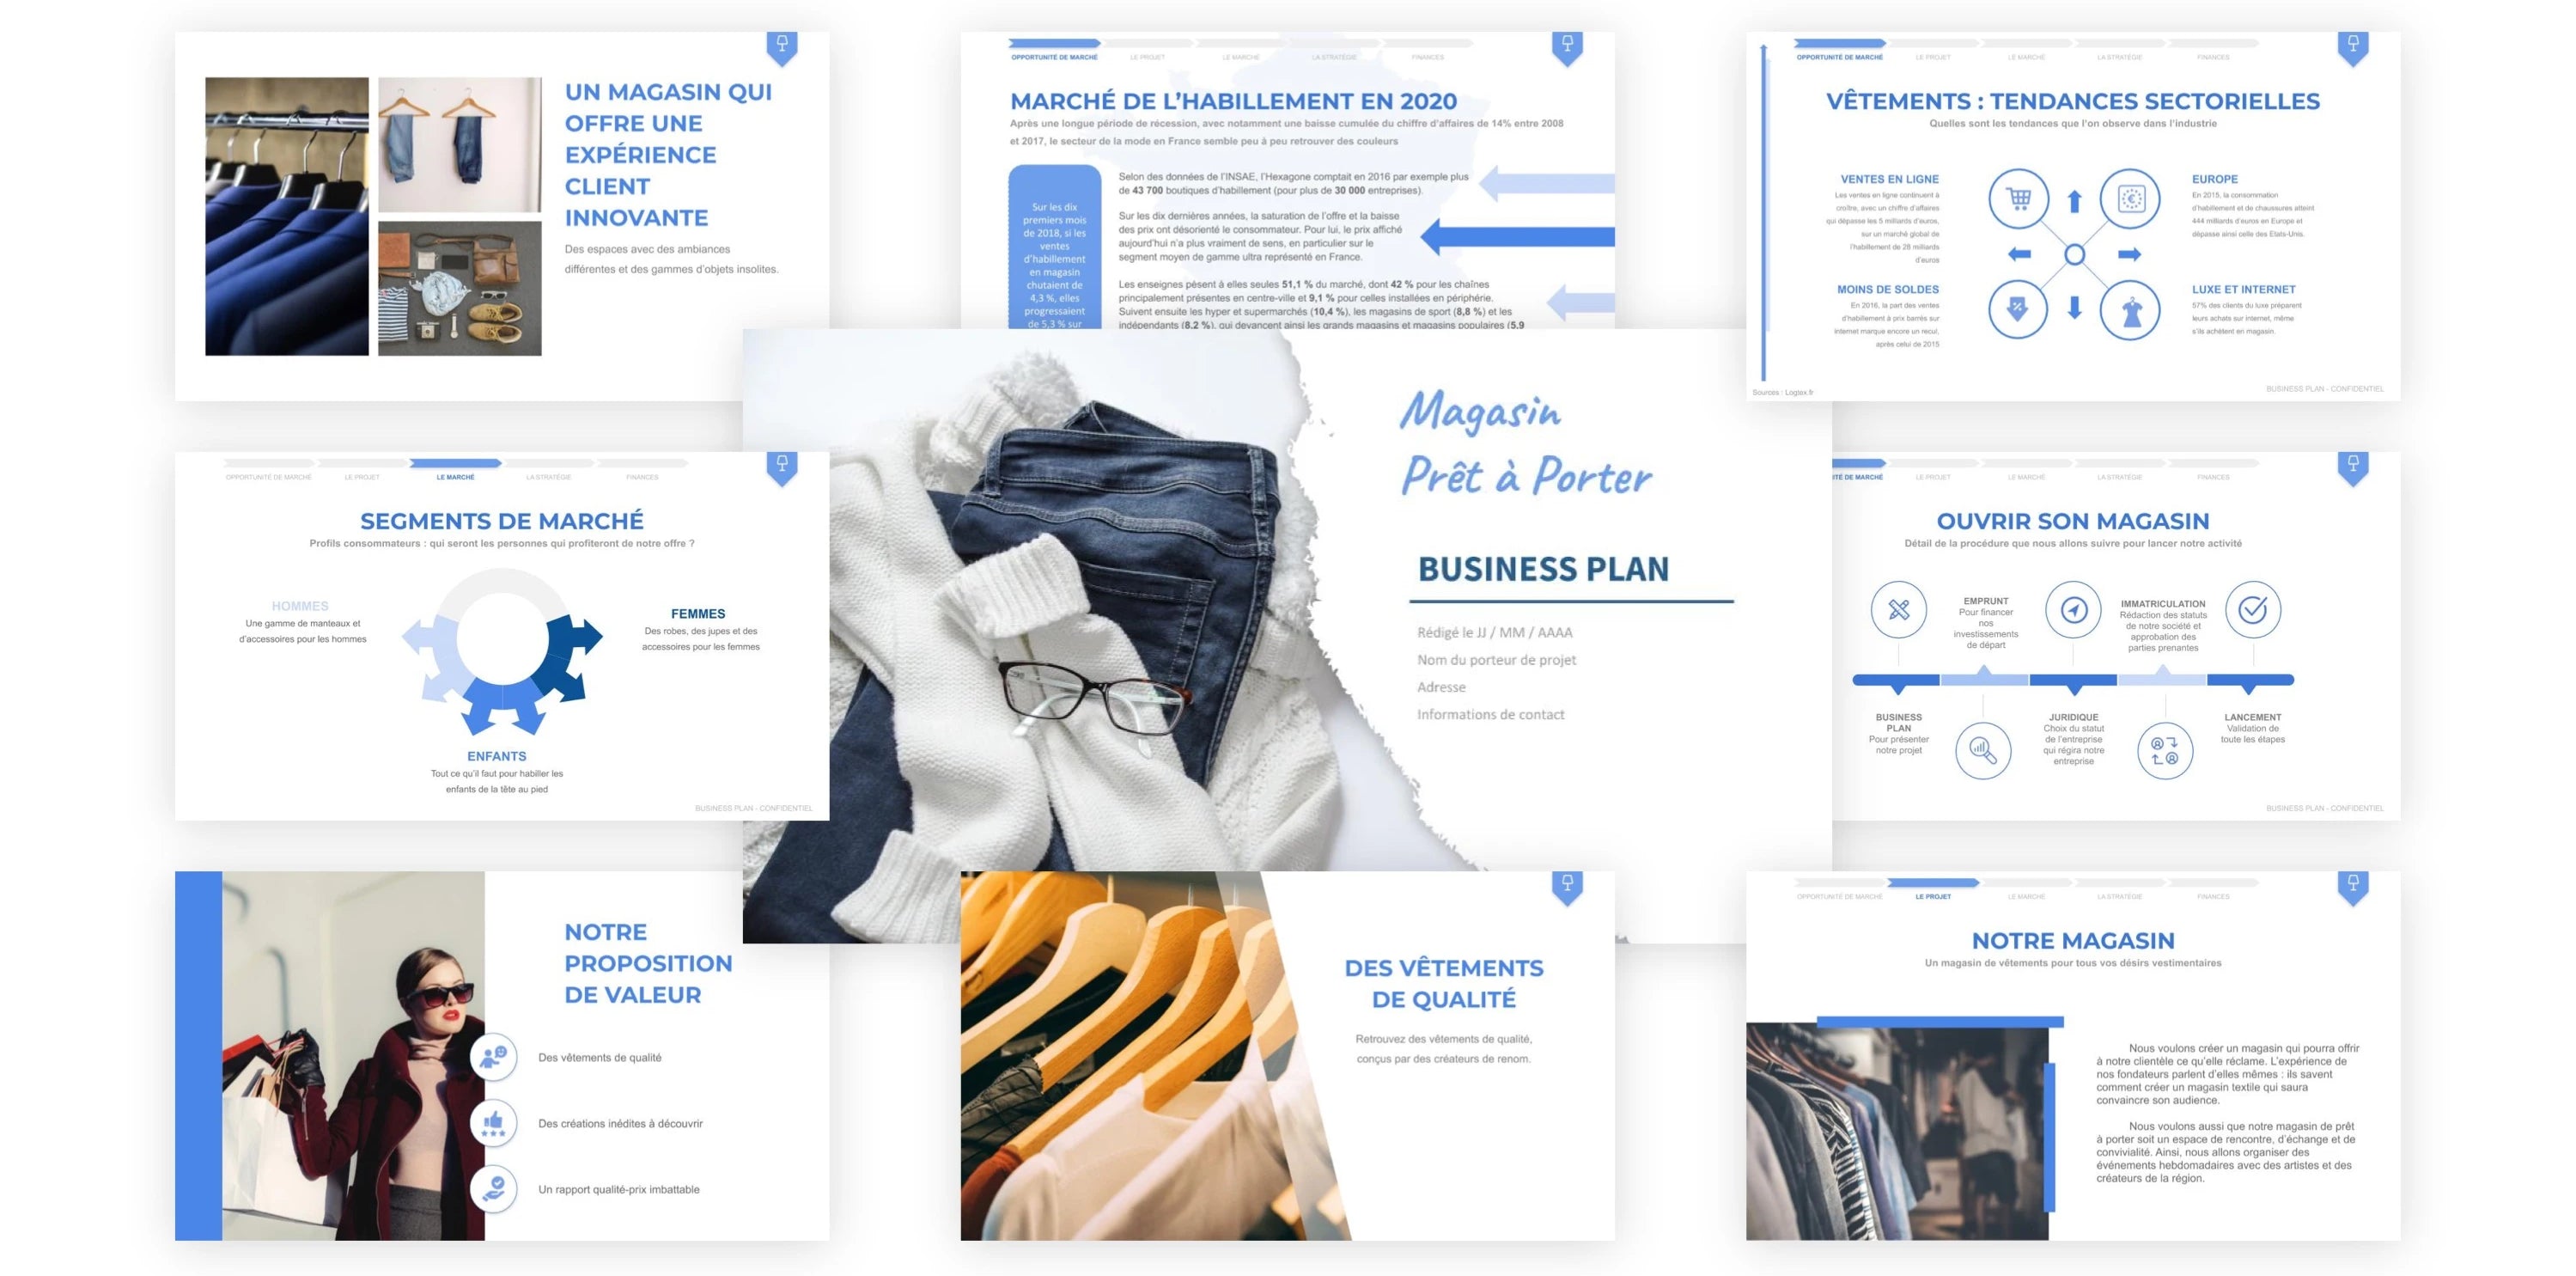 business plan e commerce de vetements pdf